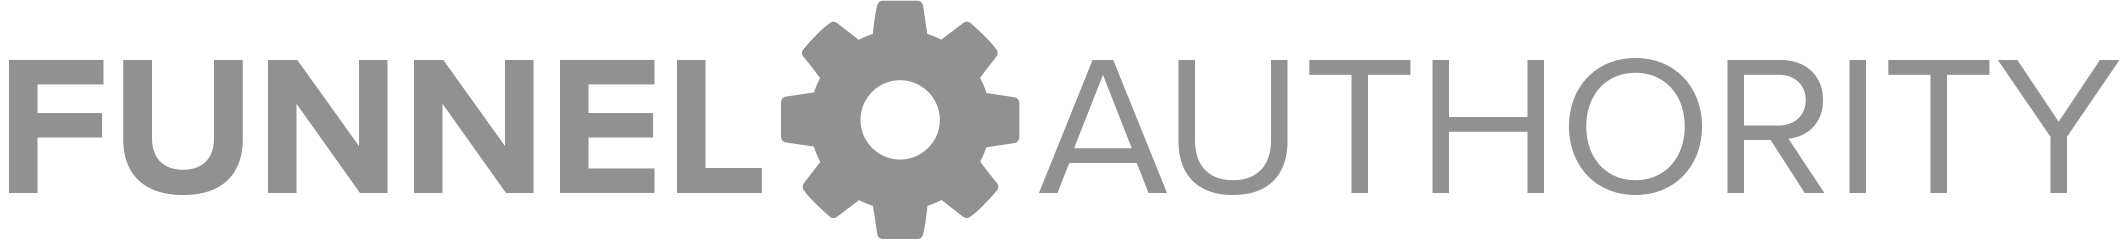 Funnel Authority logo